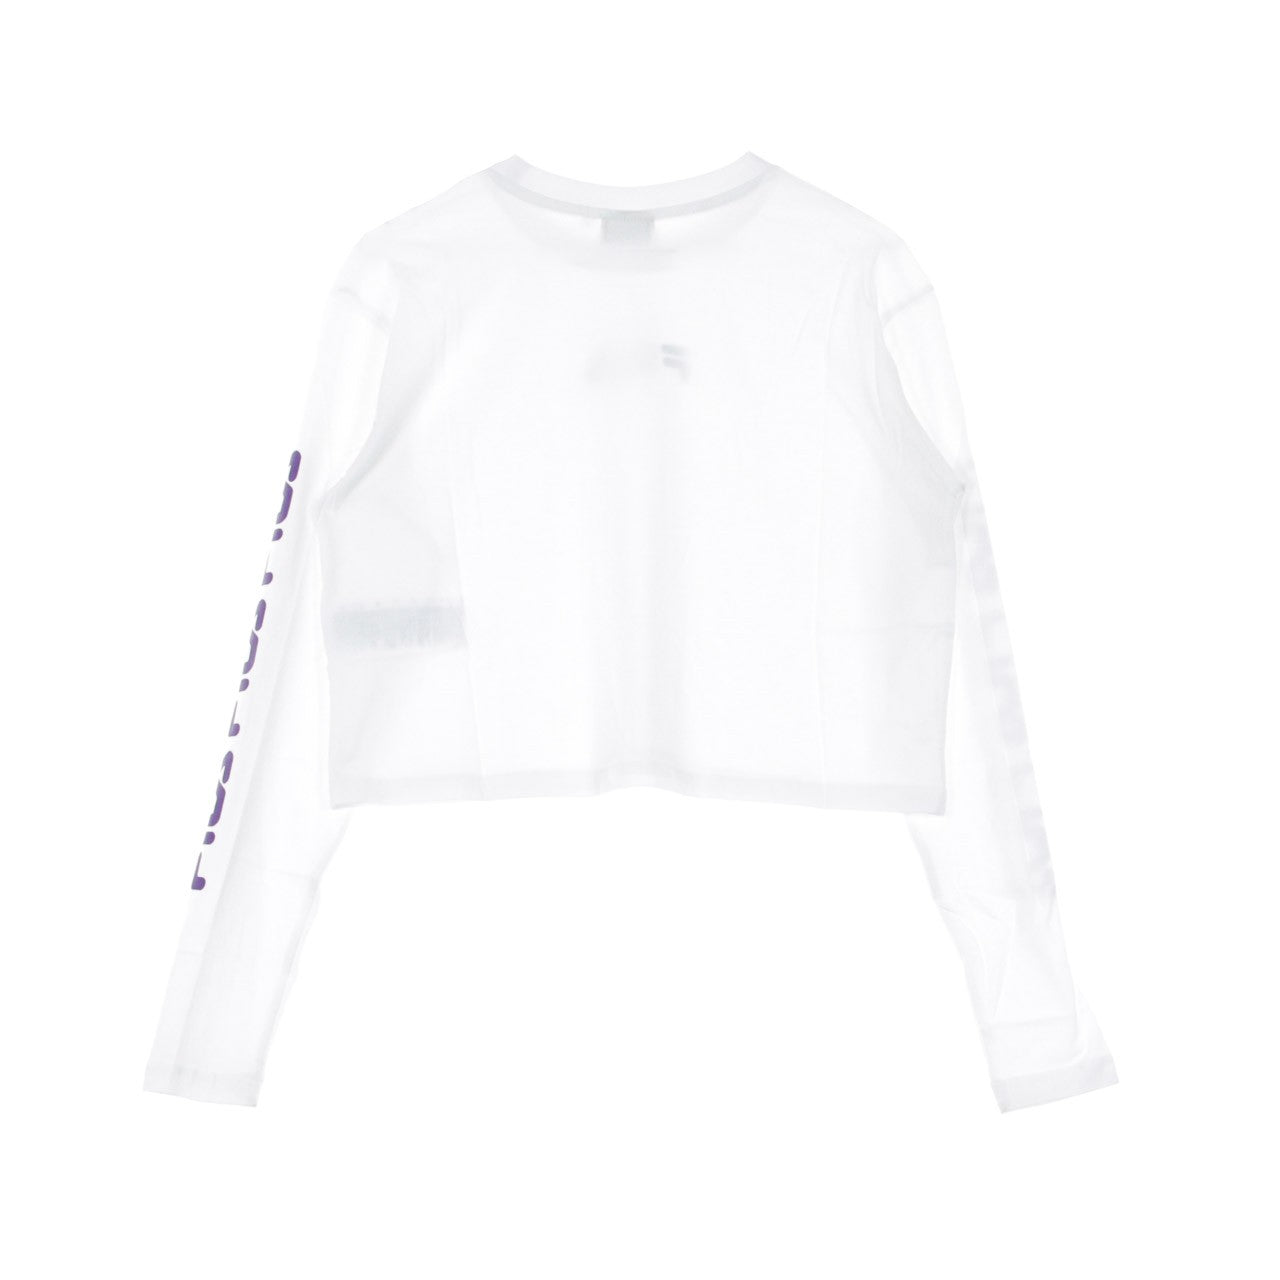 Reva Women's Cropped T-Shirt L/s Bright White